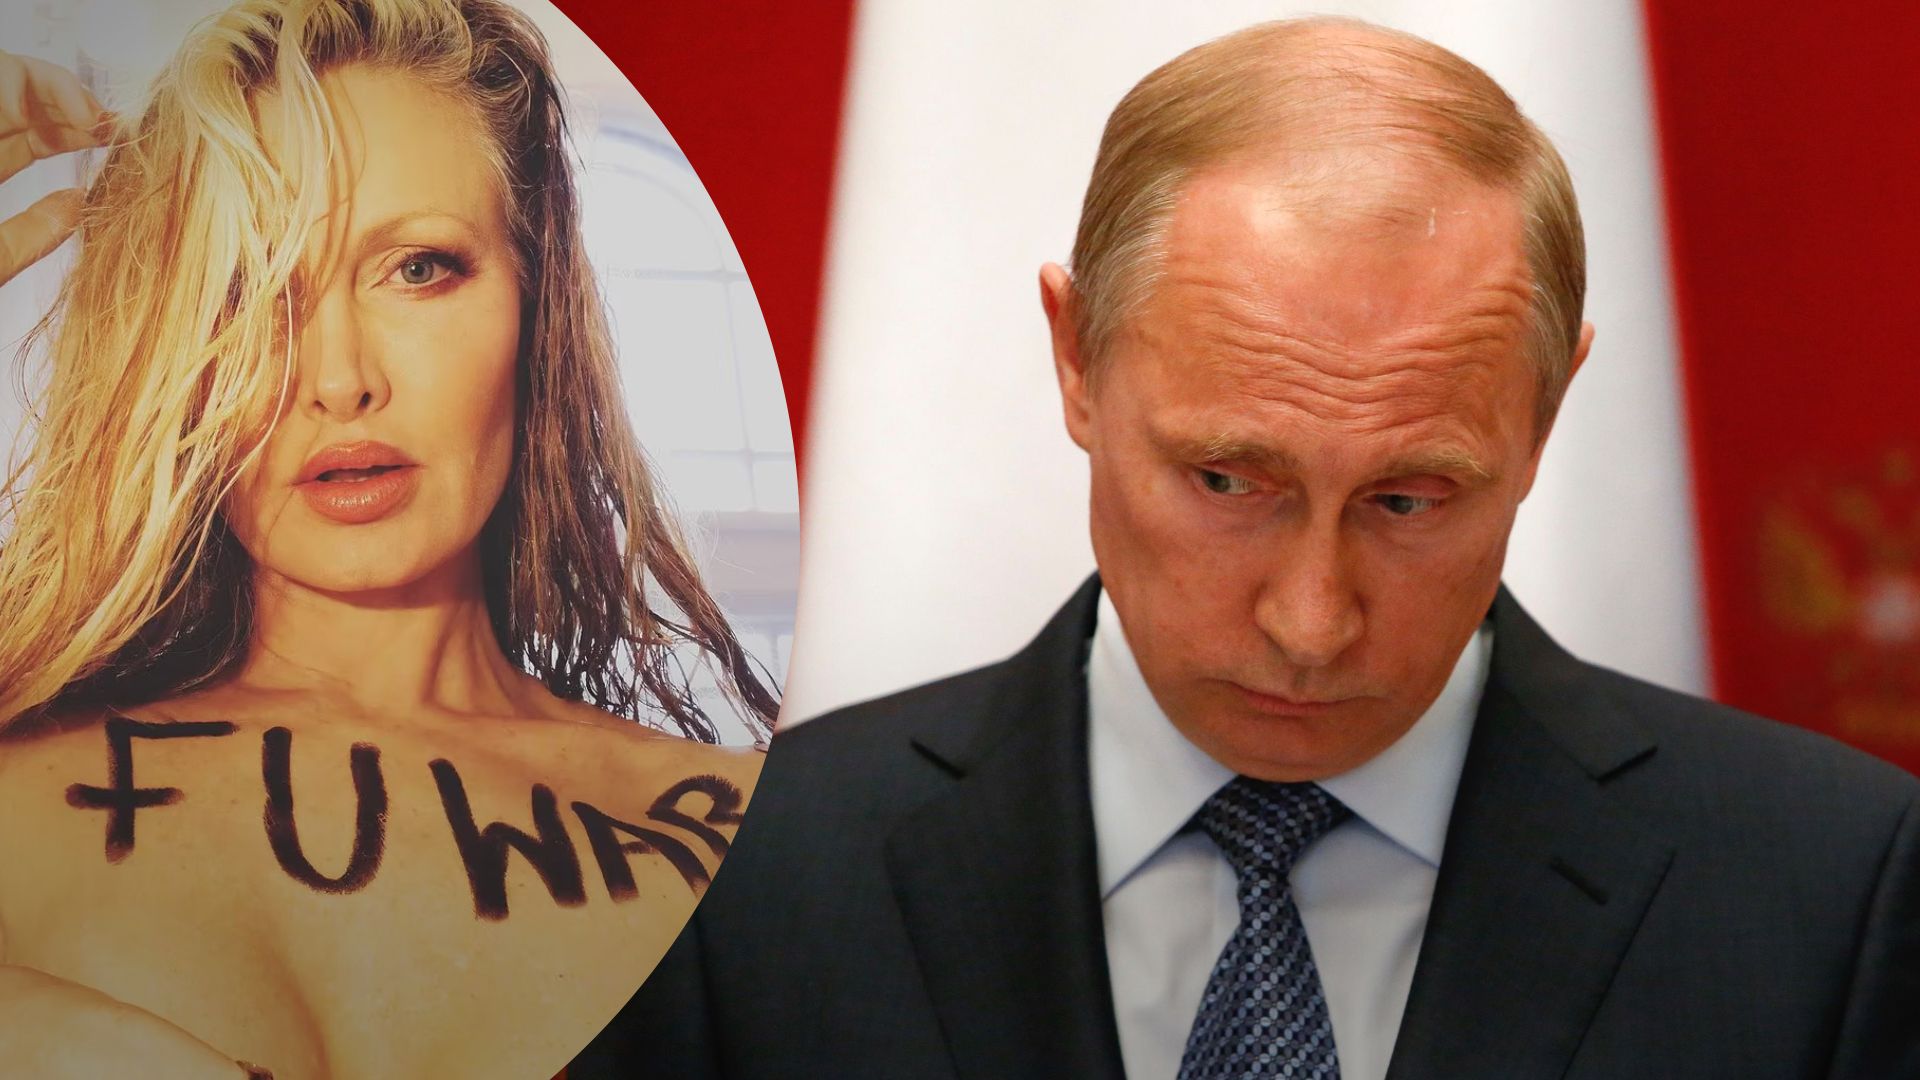 Модель Каприс Бурре готова прислать Путину свои голые фото, если он остановит войну